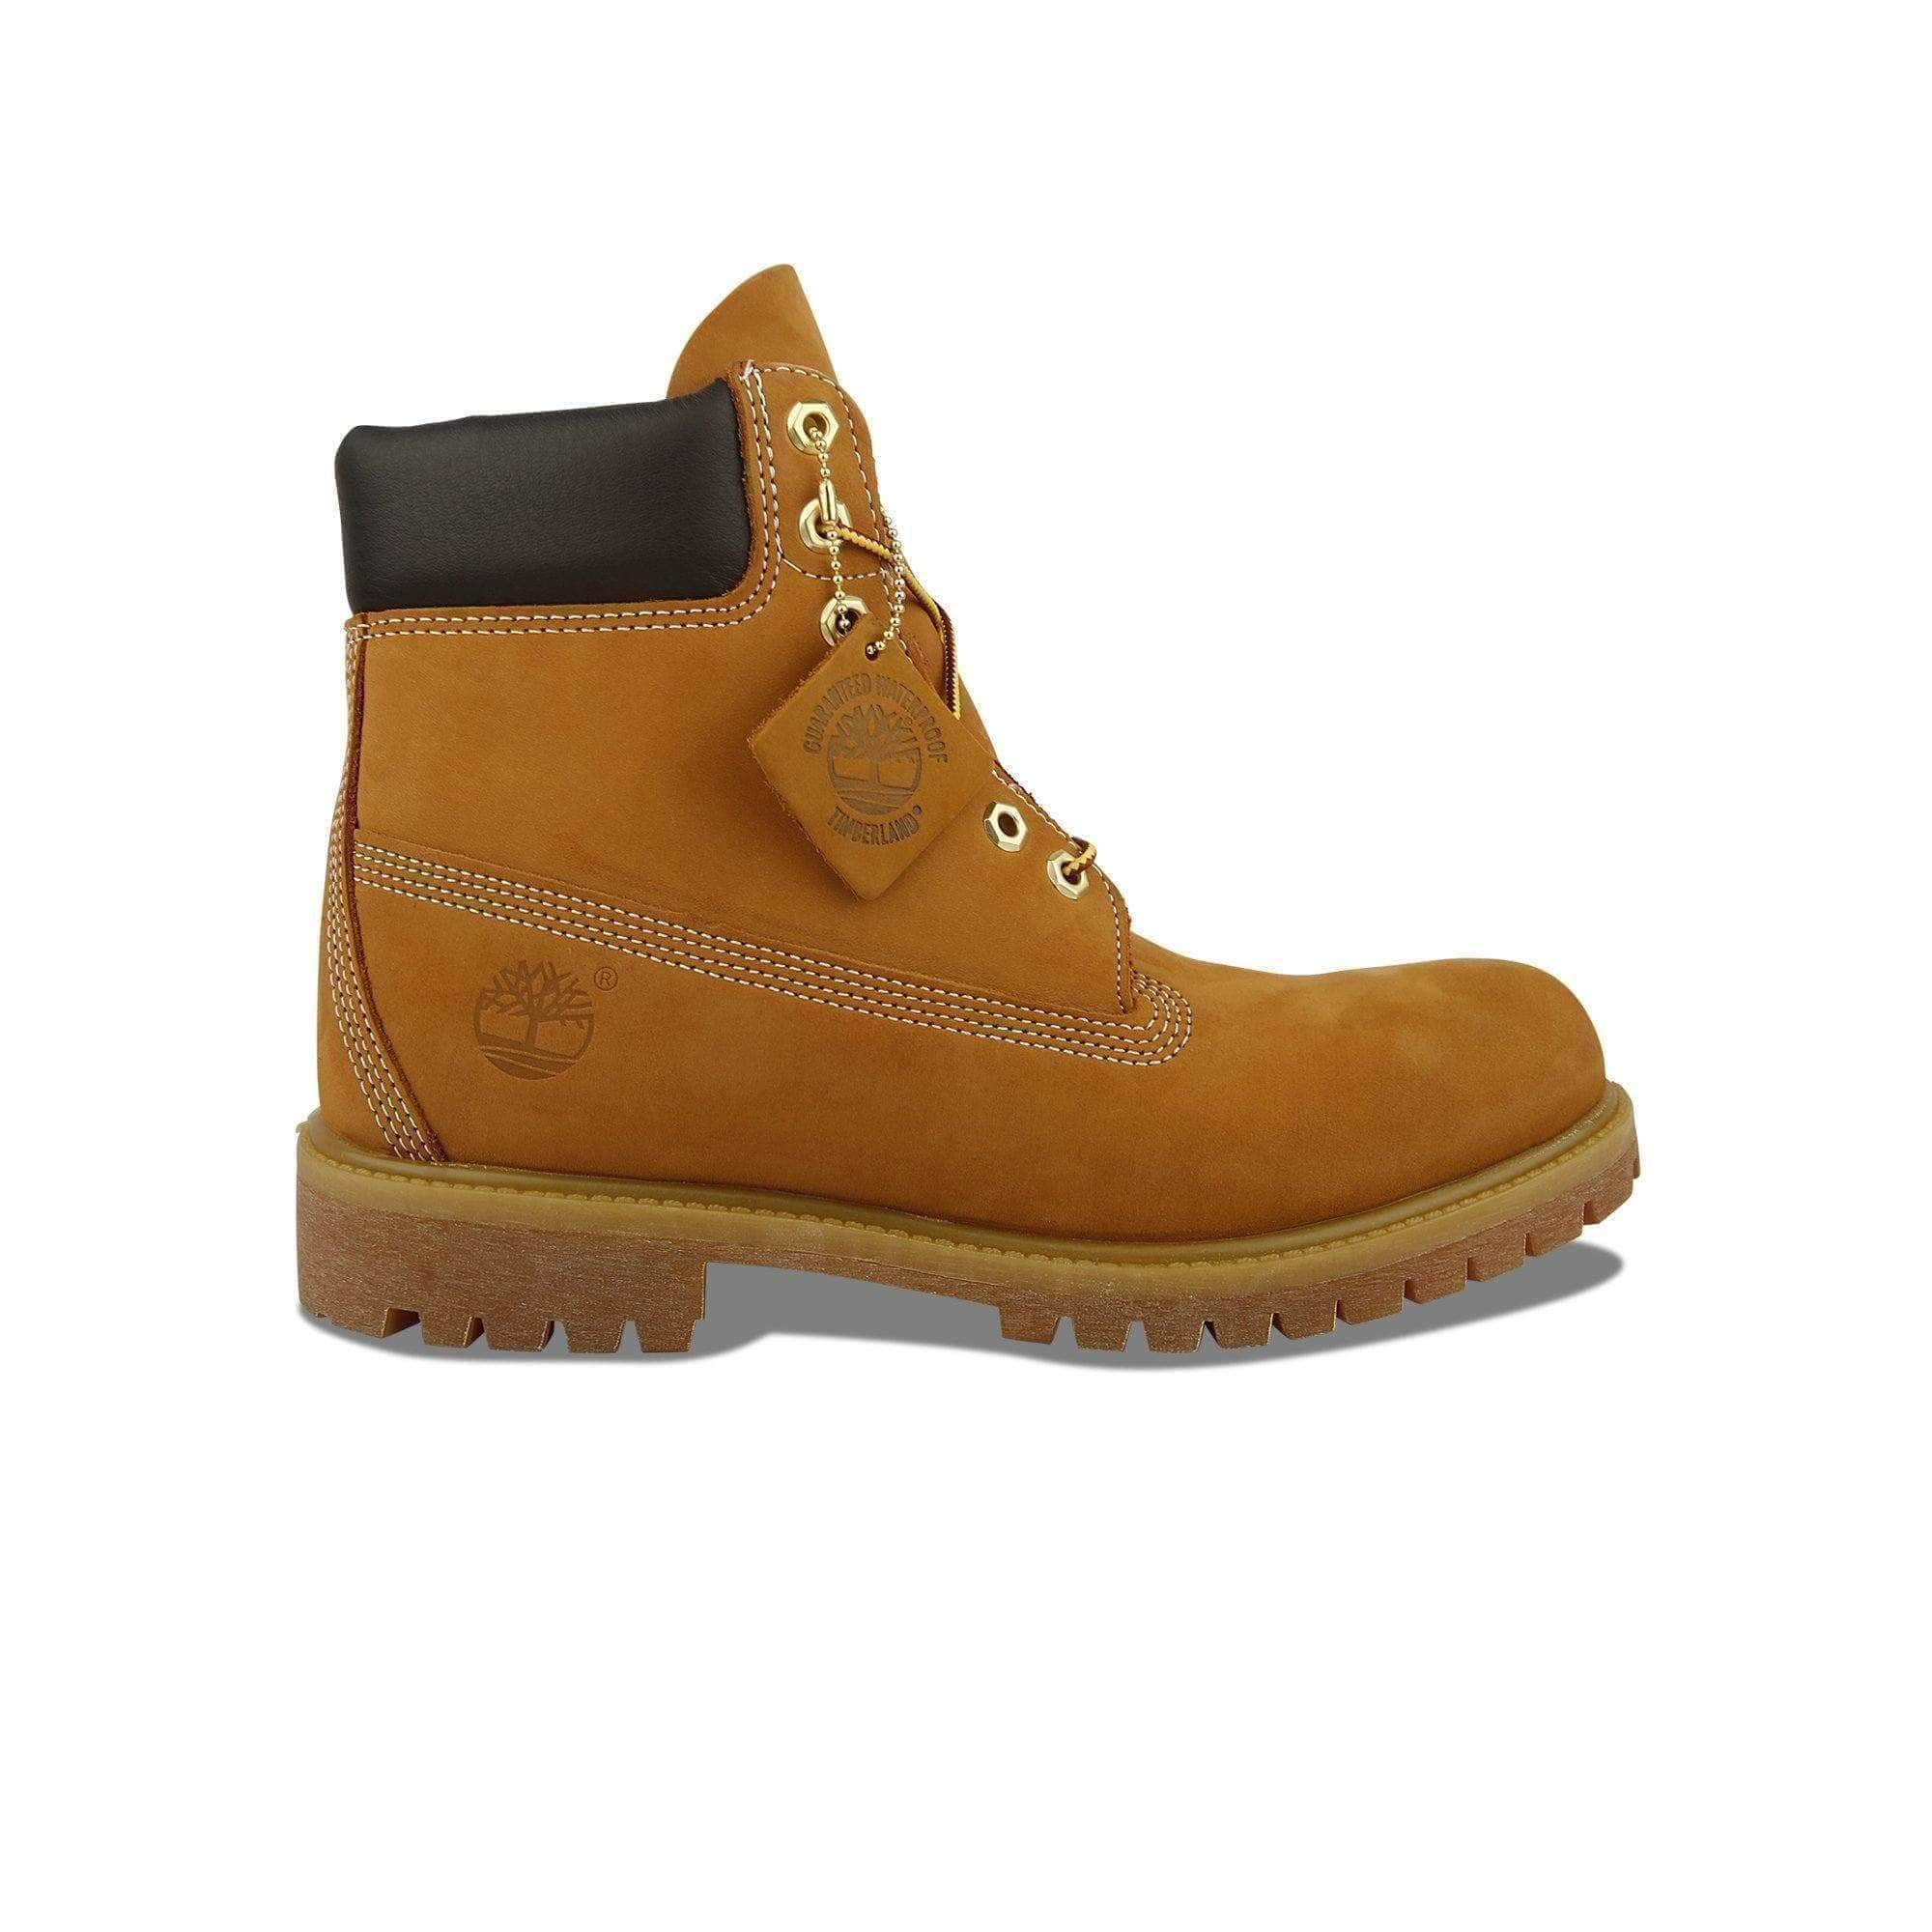 Timberland 6 Inch Premium Boot - Men's